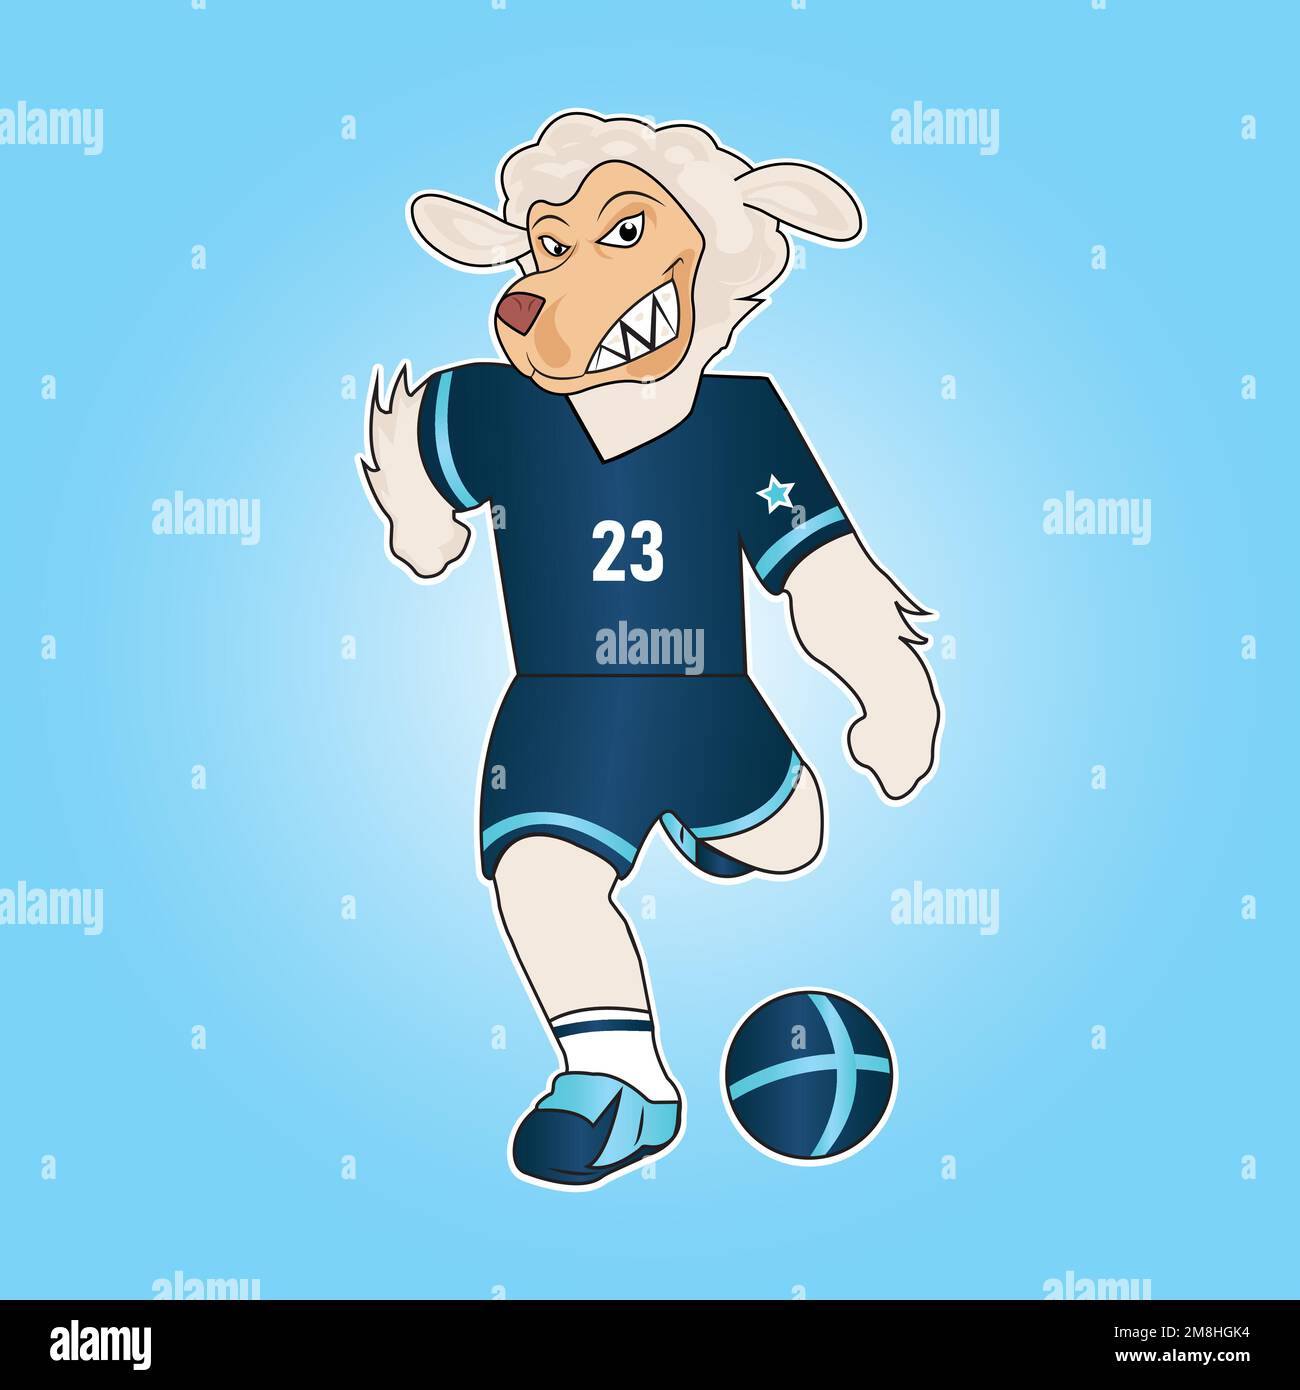 Sheep playing football gaming esport mascot logo design Stock Vector